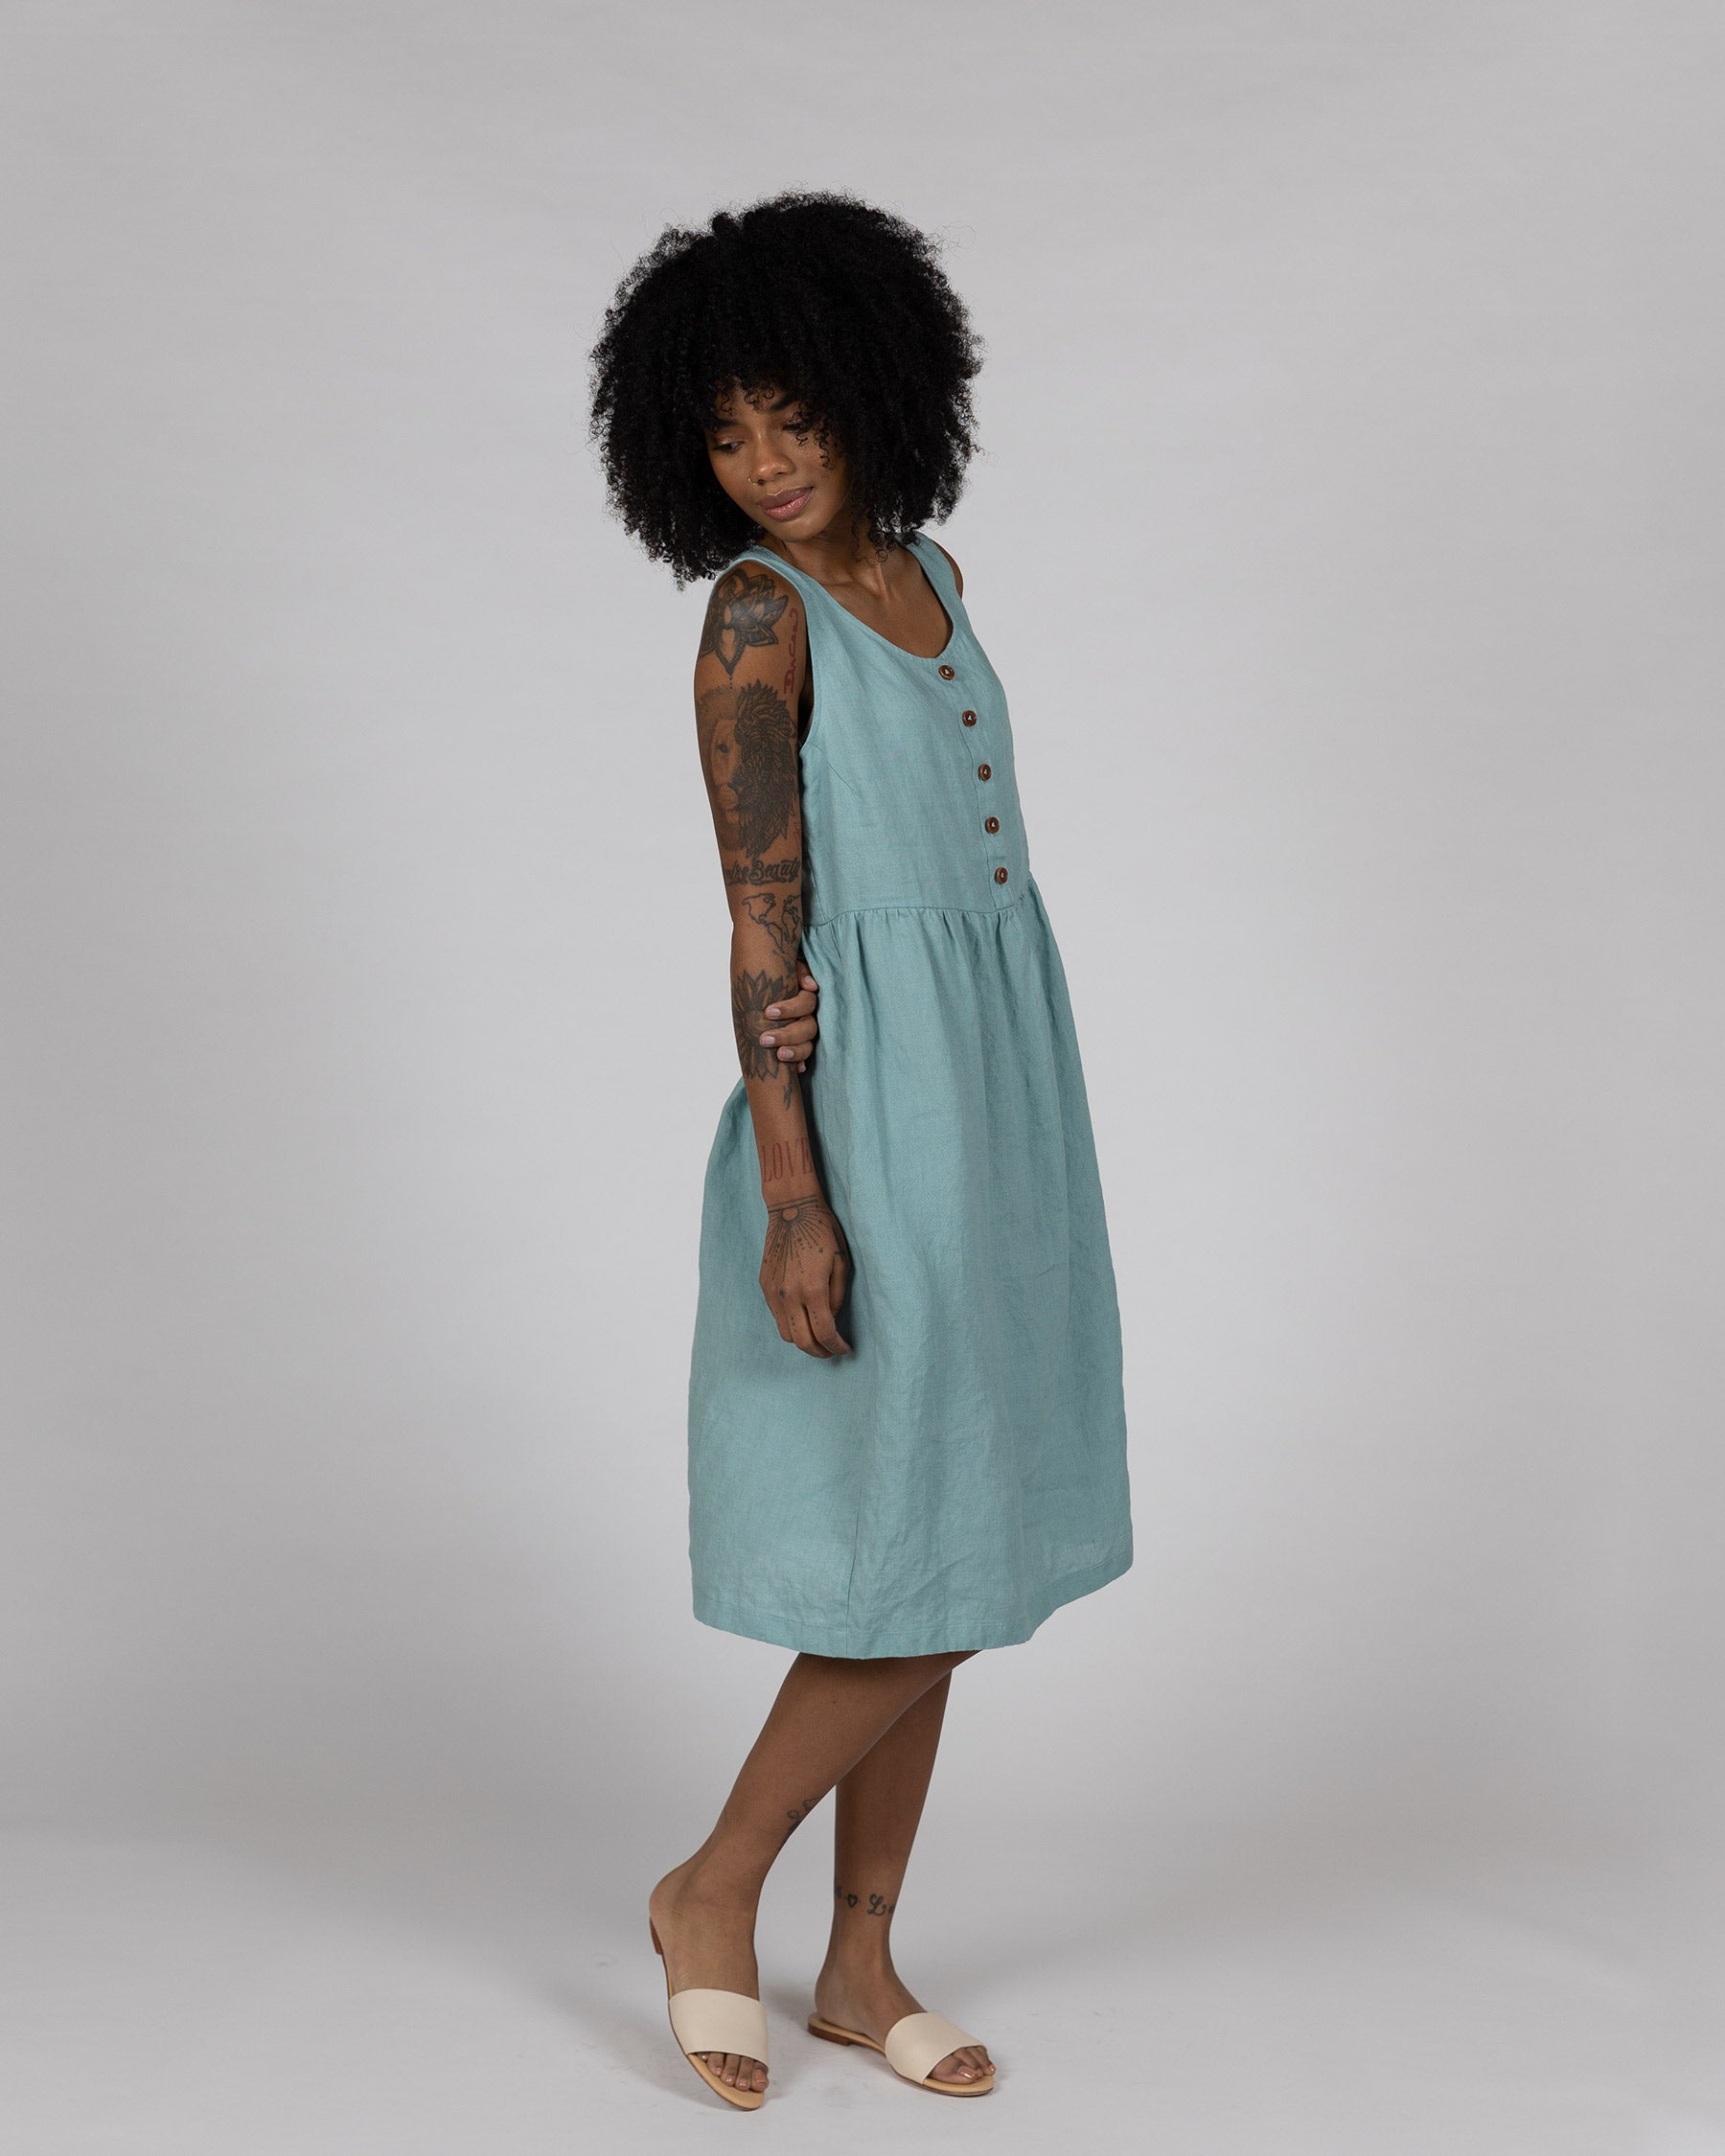 Model No.24 Summer Linen Dress in Azure